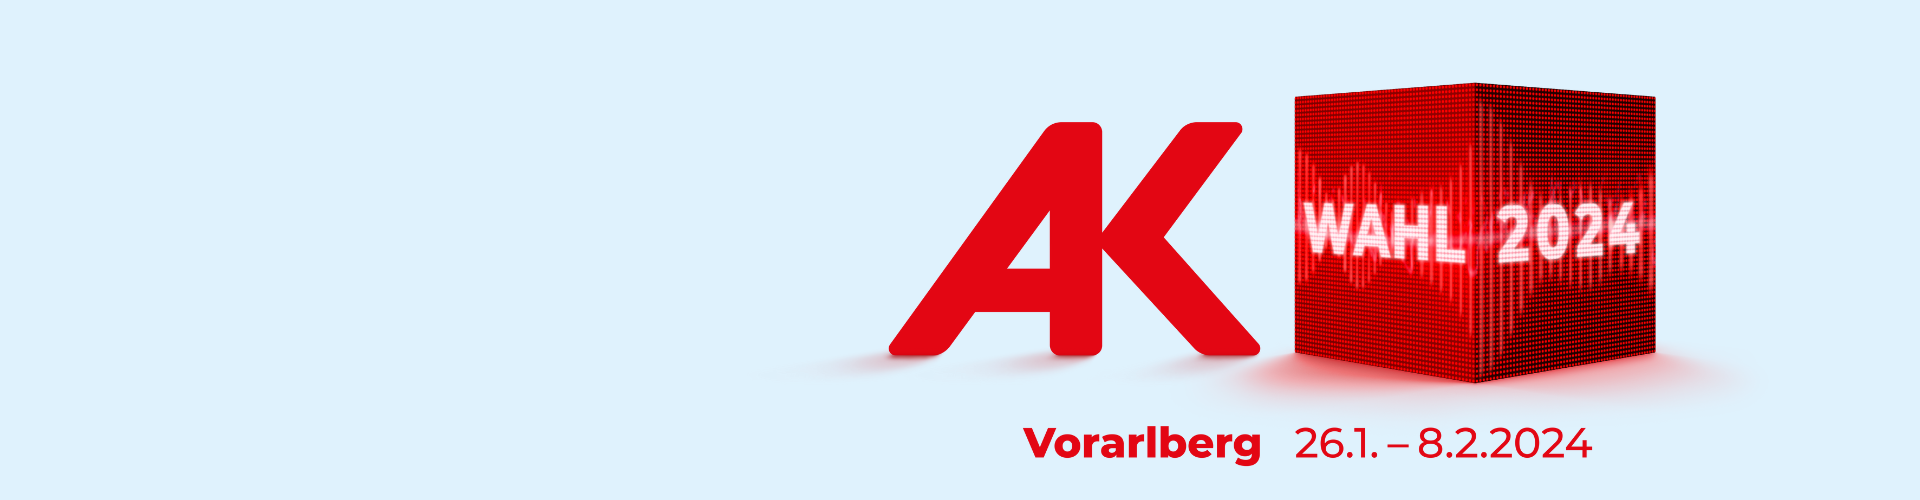 AK Wahl in Vorarlberg vom 26.1. bis 8.2.204 © AK